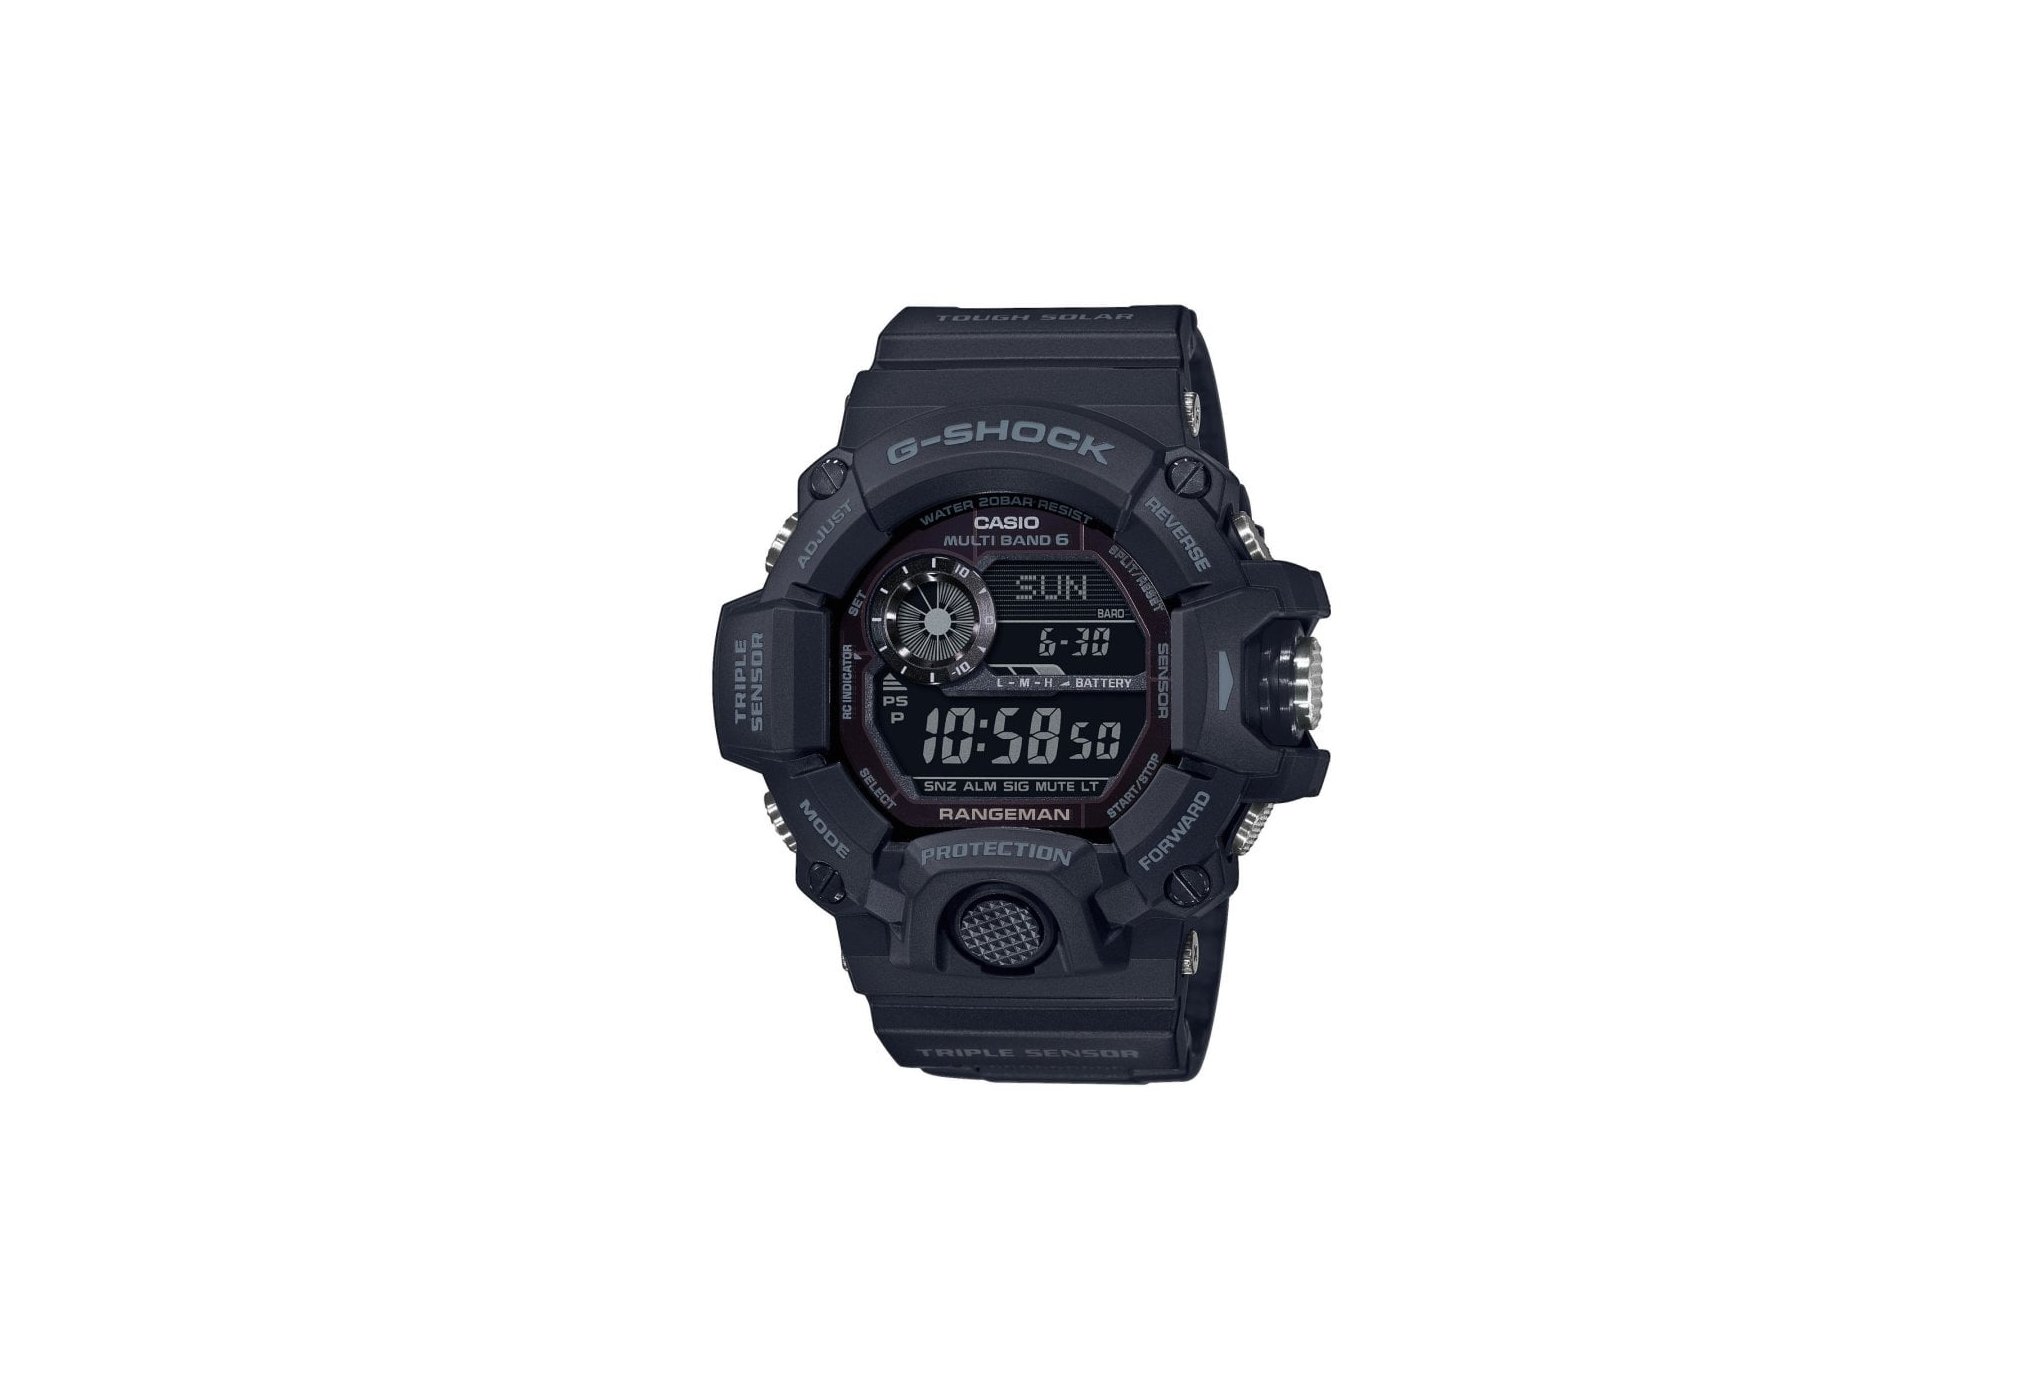 Casio G-Shock rangeman gw-9400-1ber montres de sport